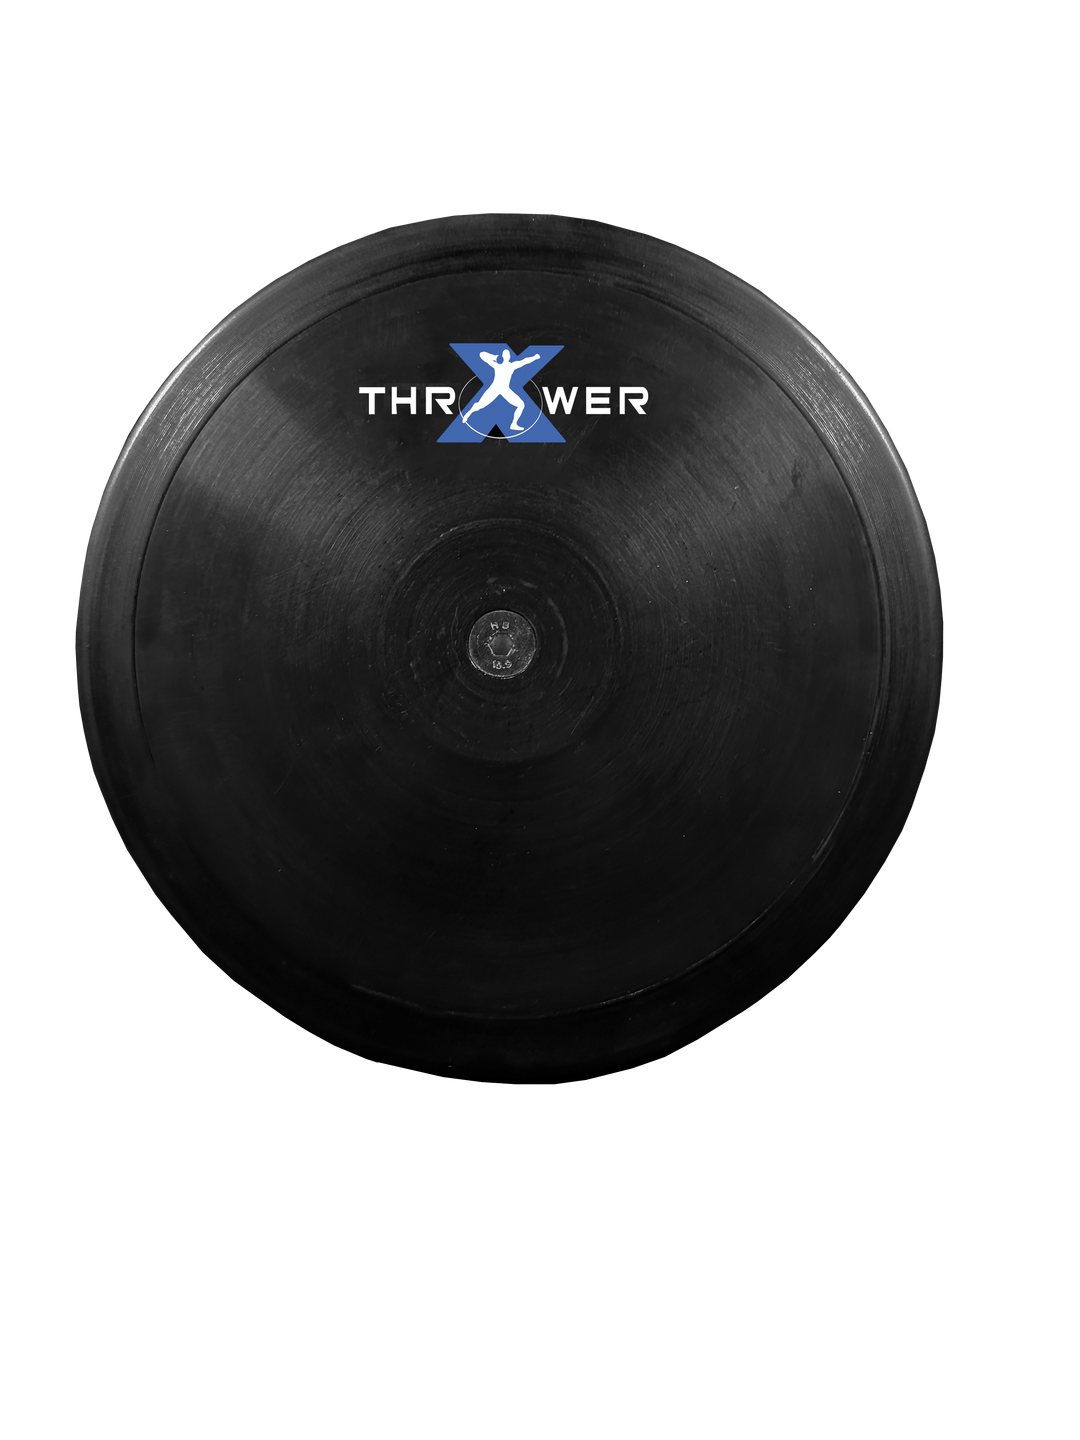 Discus Thrower X 75% Rim Weight Discus